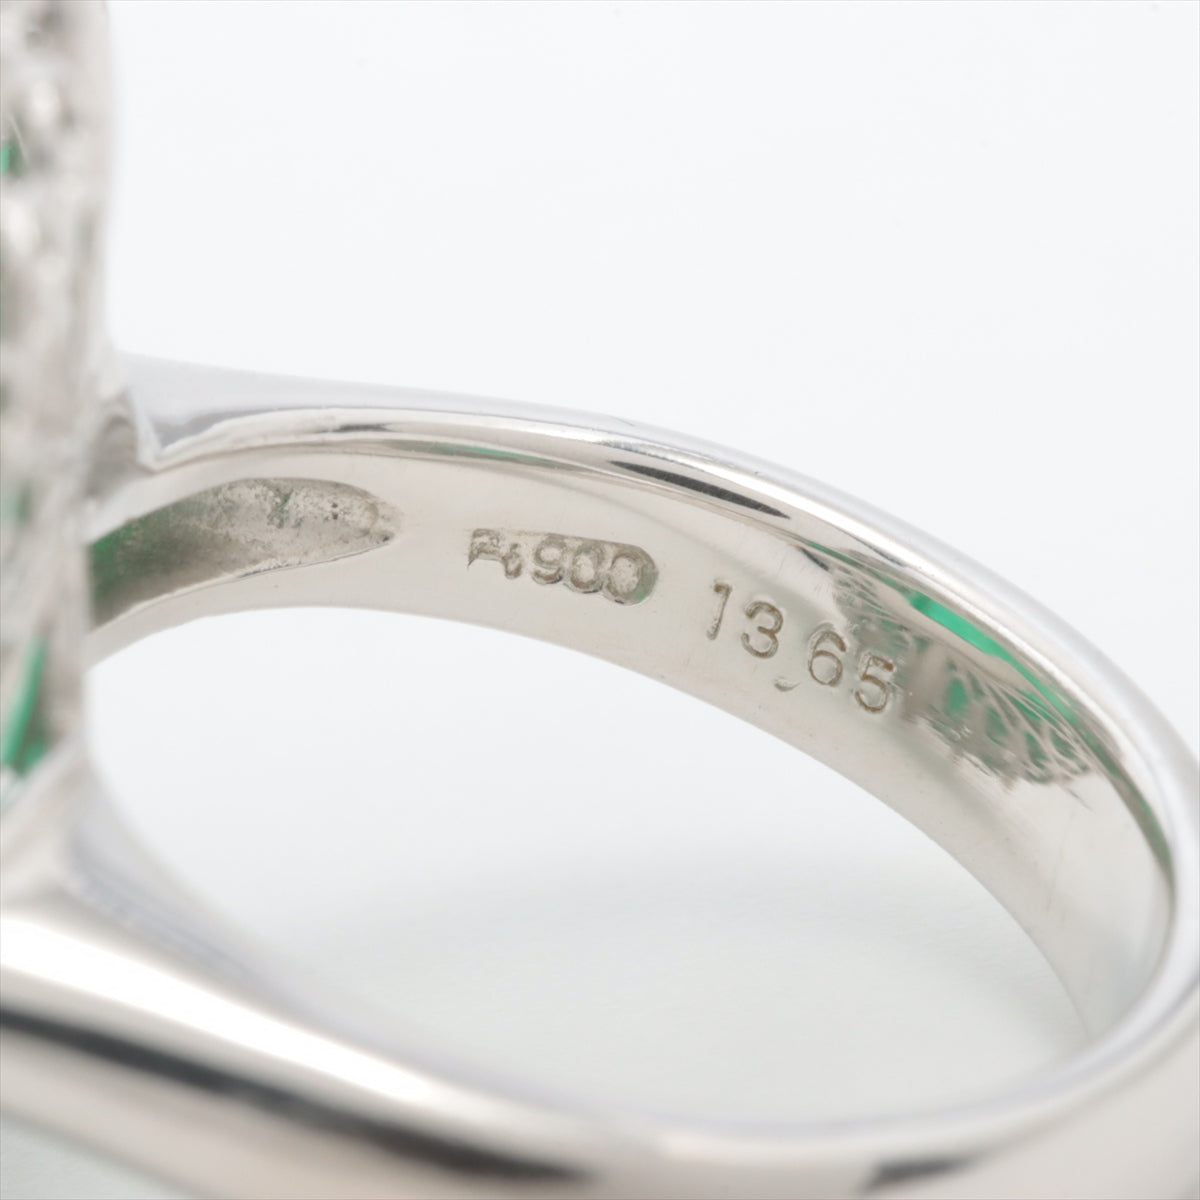 Emerald Diamond Ring Pt900 22.7g 13.65 D2.69